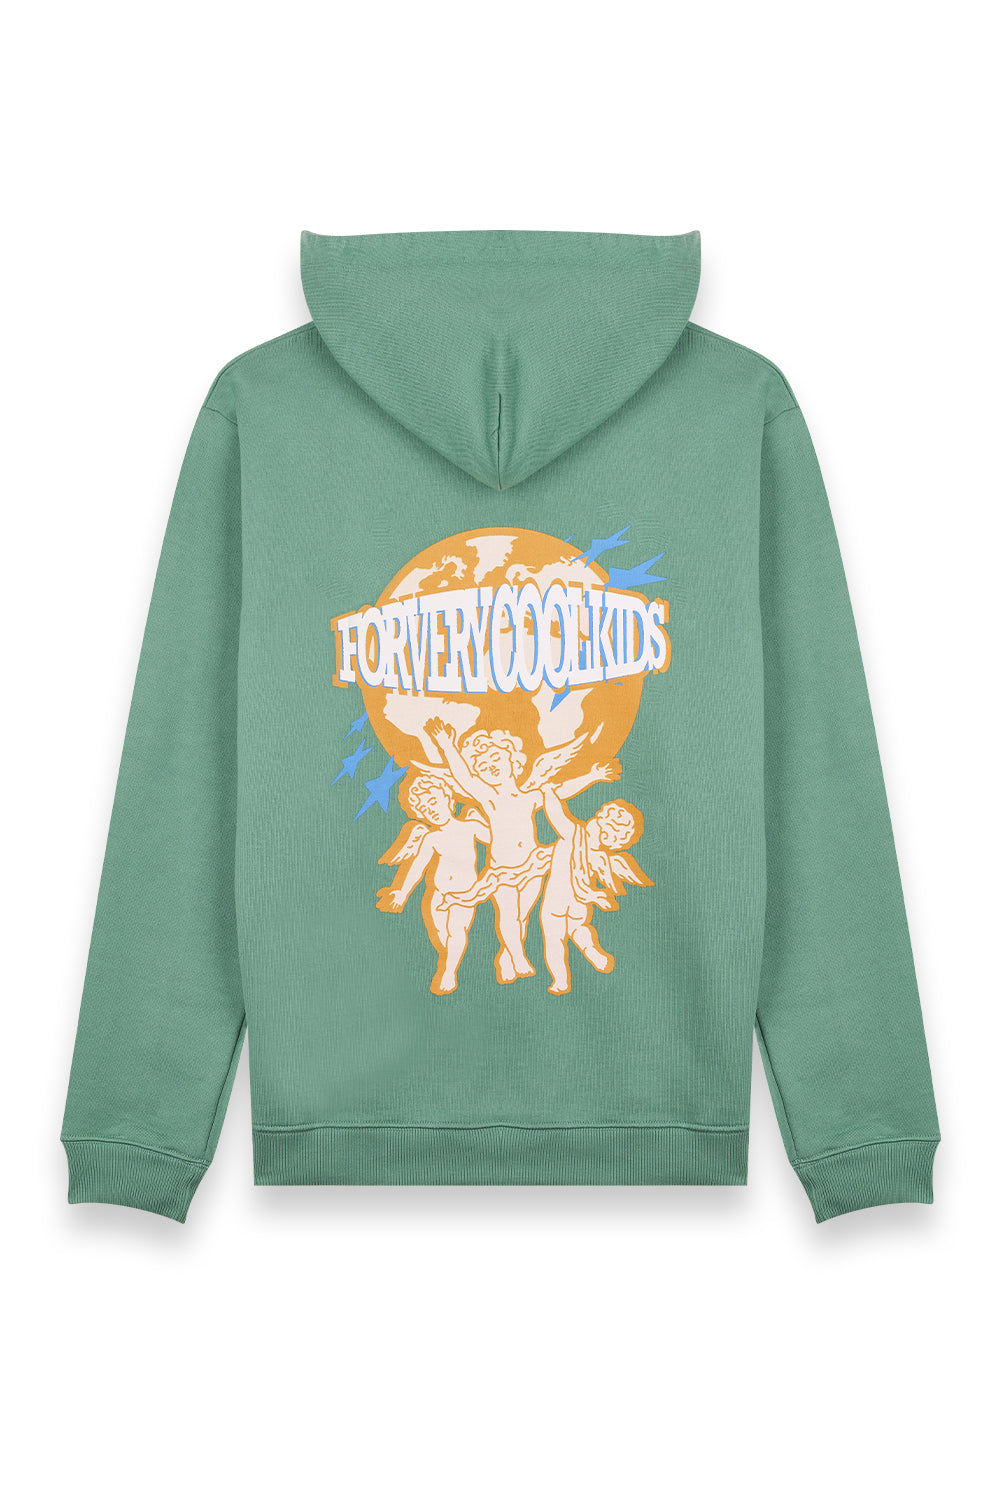 hoodie vert - green hoodie - fvck - forverycoolkids - hoodies - paris - france - streetwear - tealer - weiz - corteiz - rap - supreme - citadium - cool - for very cool kids - sweat à capuche -sweats -pull - hiphop - qualité  - palm angels - beau vert - hoodie femme - women hoodie - hoodies